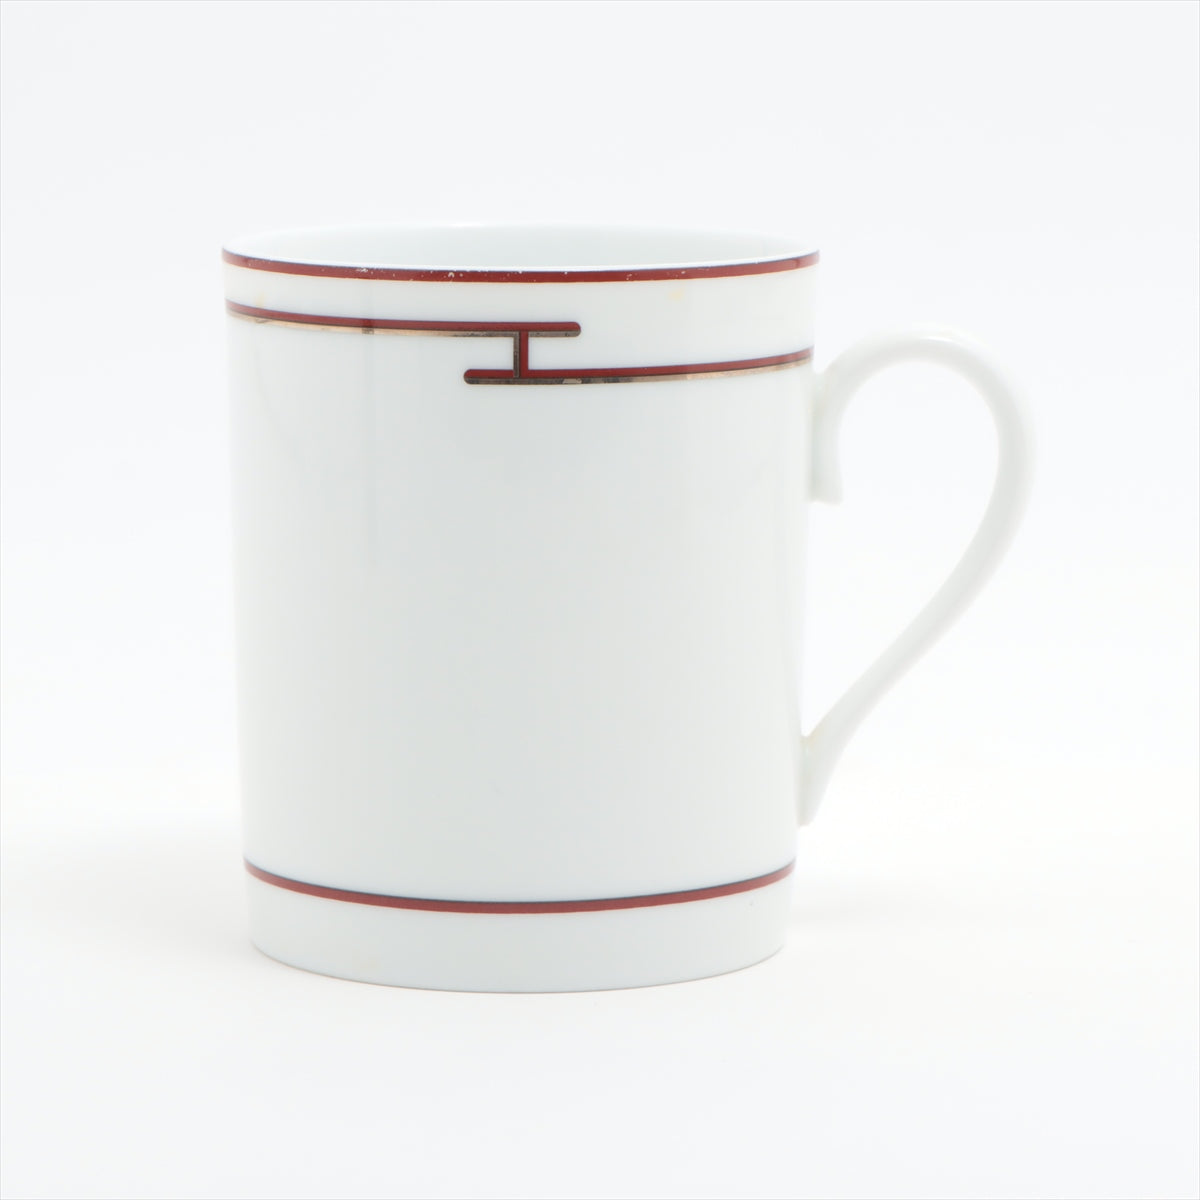 Hermès Rhythm cups Ceramic Red